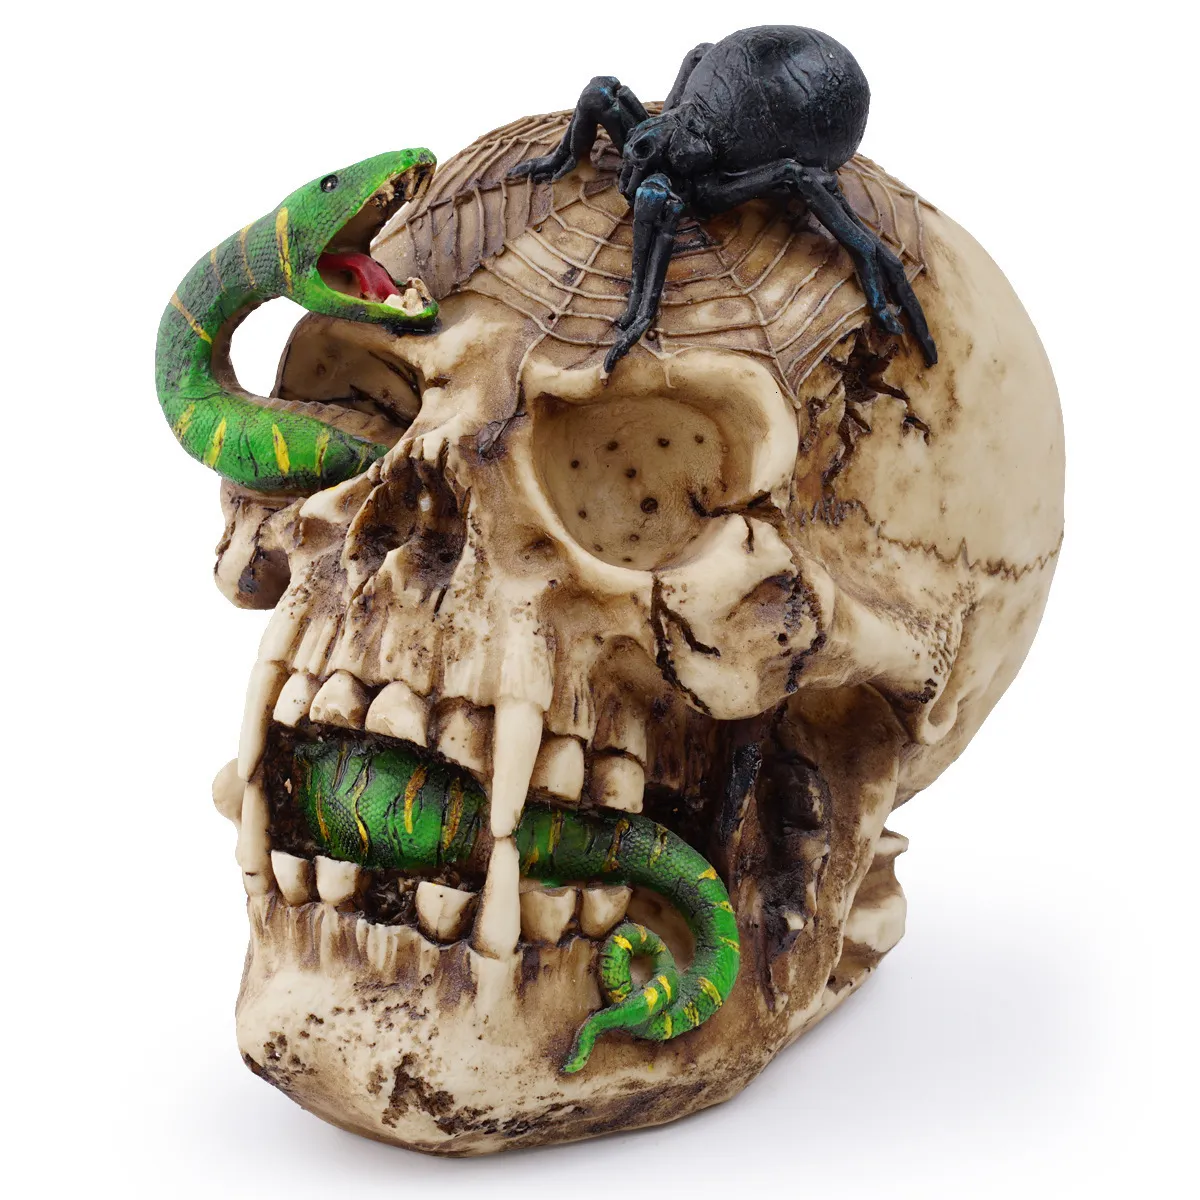 장식적인 물건 인형 인형 수제 수지 공예 두개골 머리 동상 뱀과 거미 죽음의 조각 홈 할로윈 파티 장식 영화 공포 소품 230619